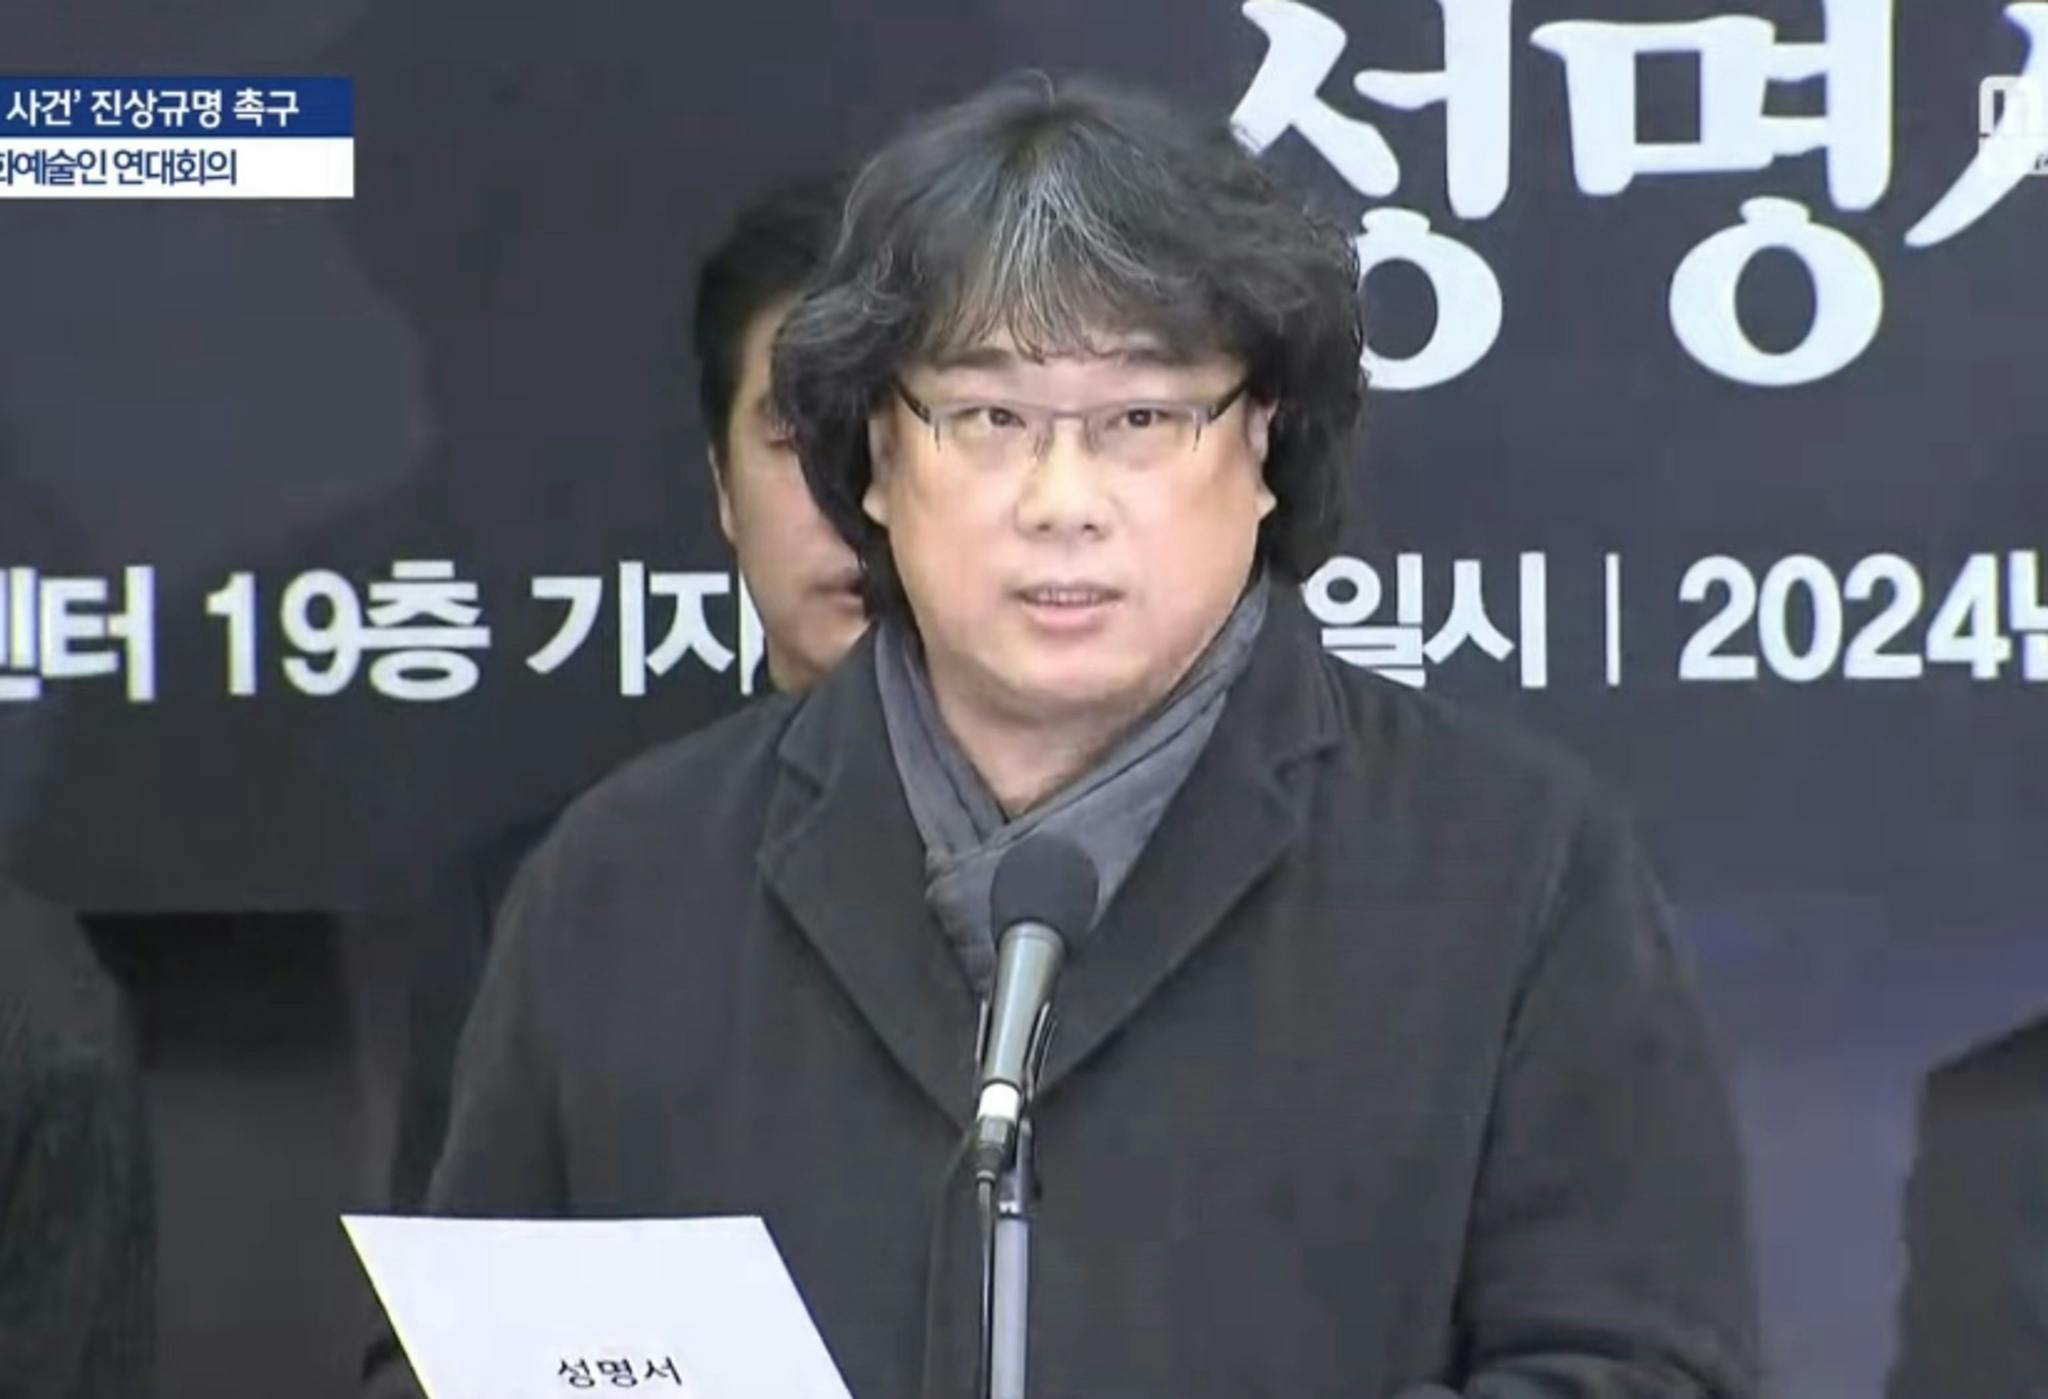 Imagen de la comparecencia de prensa de Bong Joon-ho en Seúl el 12 de enero de 2024